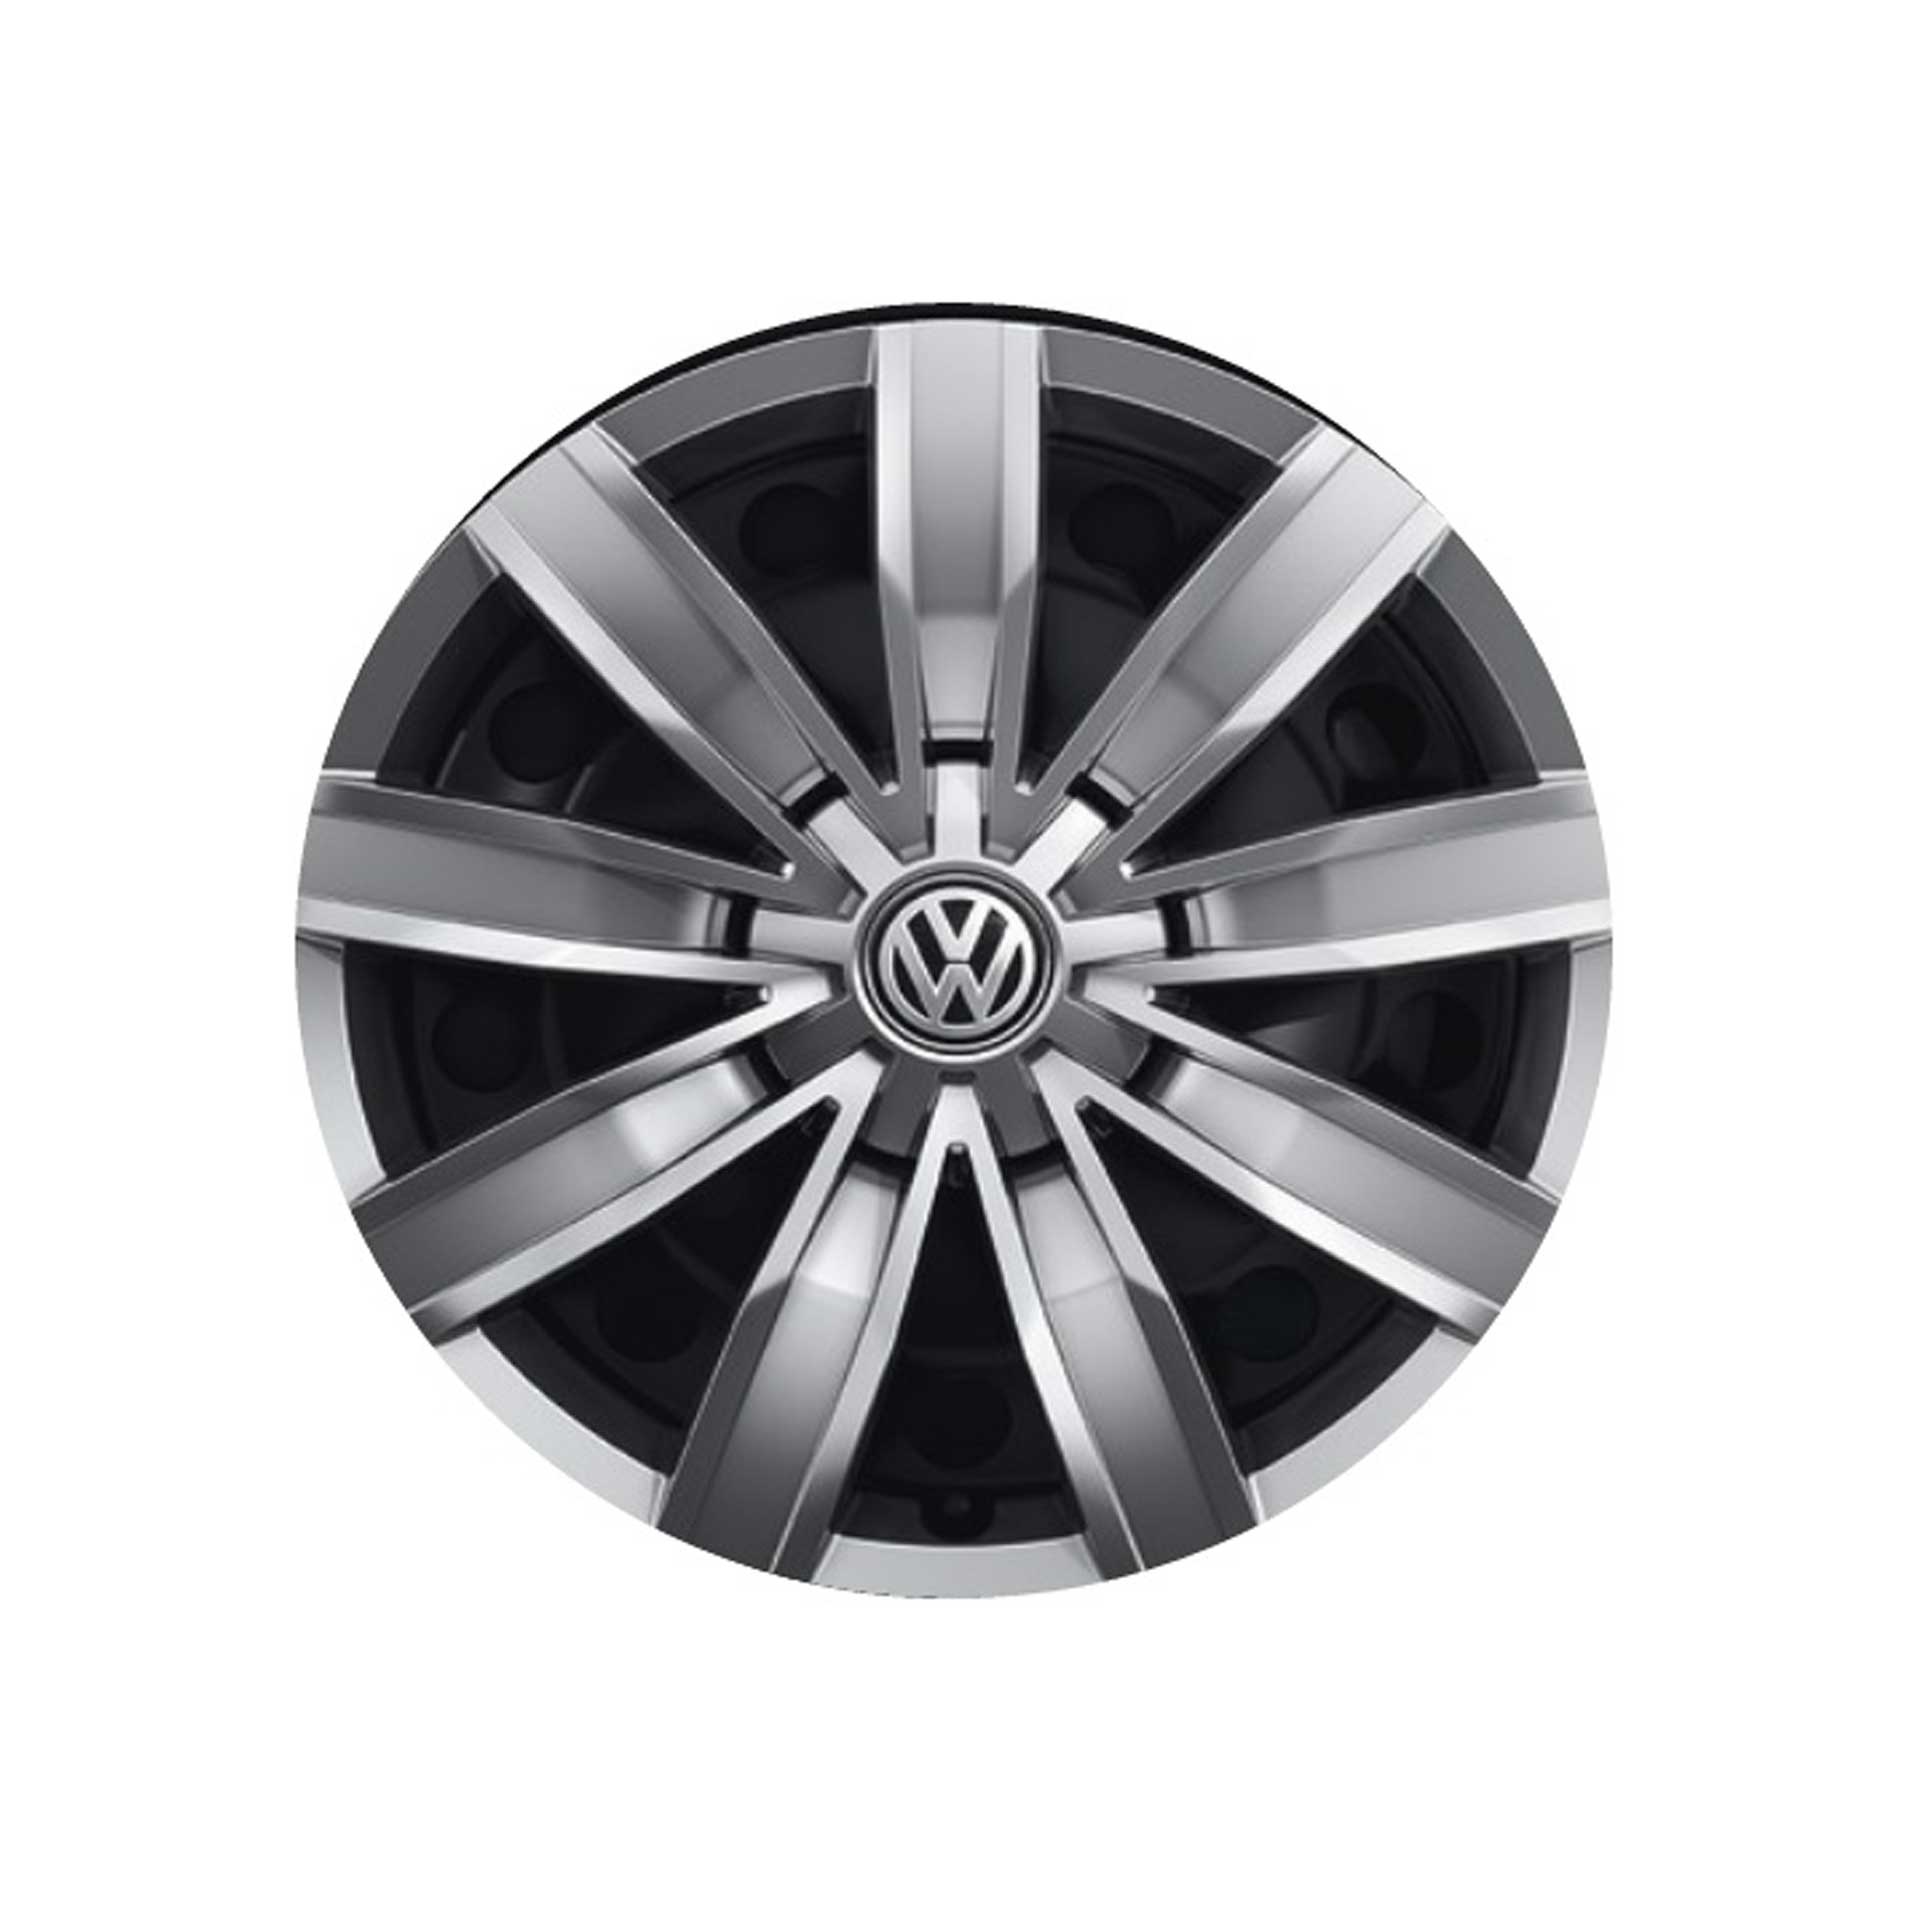 Volkswagen Tiguan Radkappen (4 Stück) 17 Zoll Radzierblenden